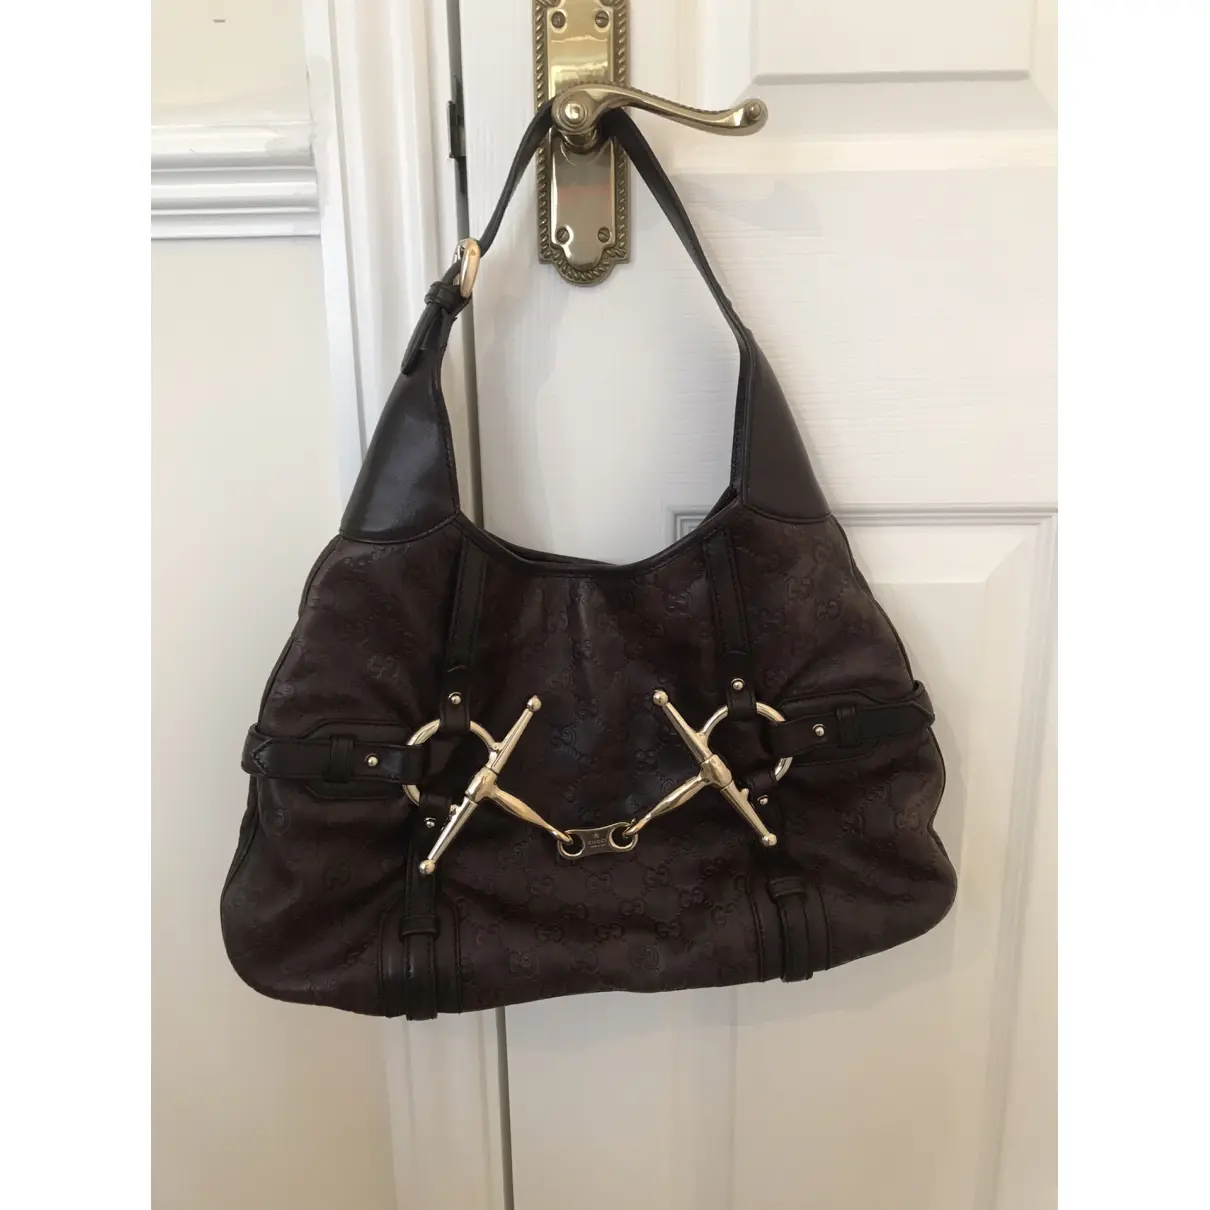 Buy Gucci Hobo leather handbag online - Vintage